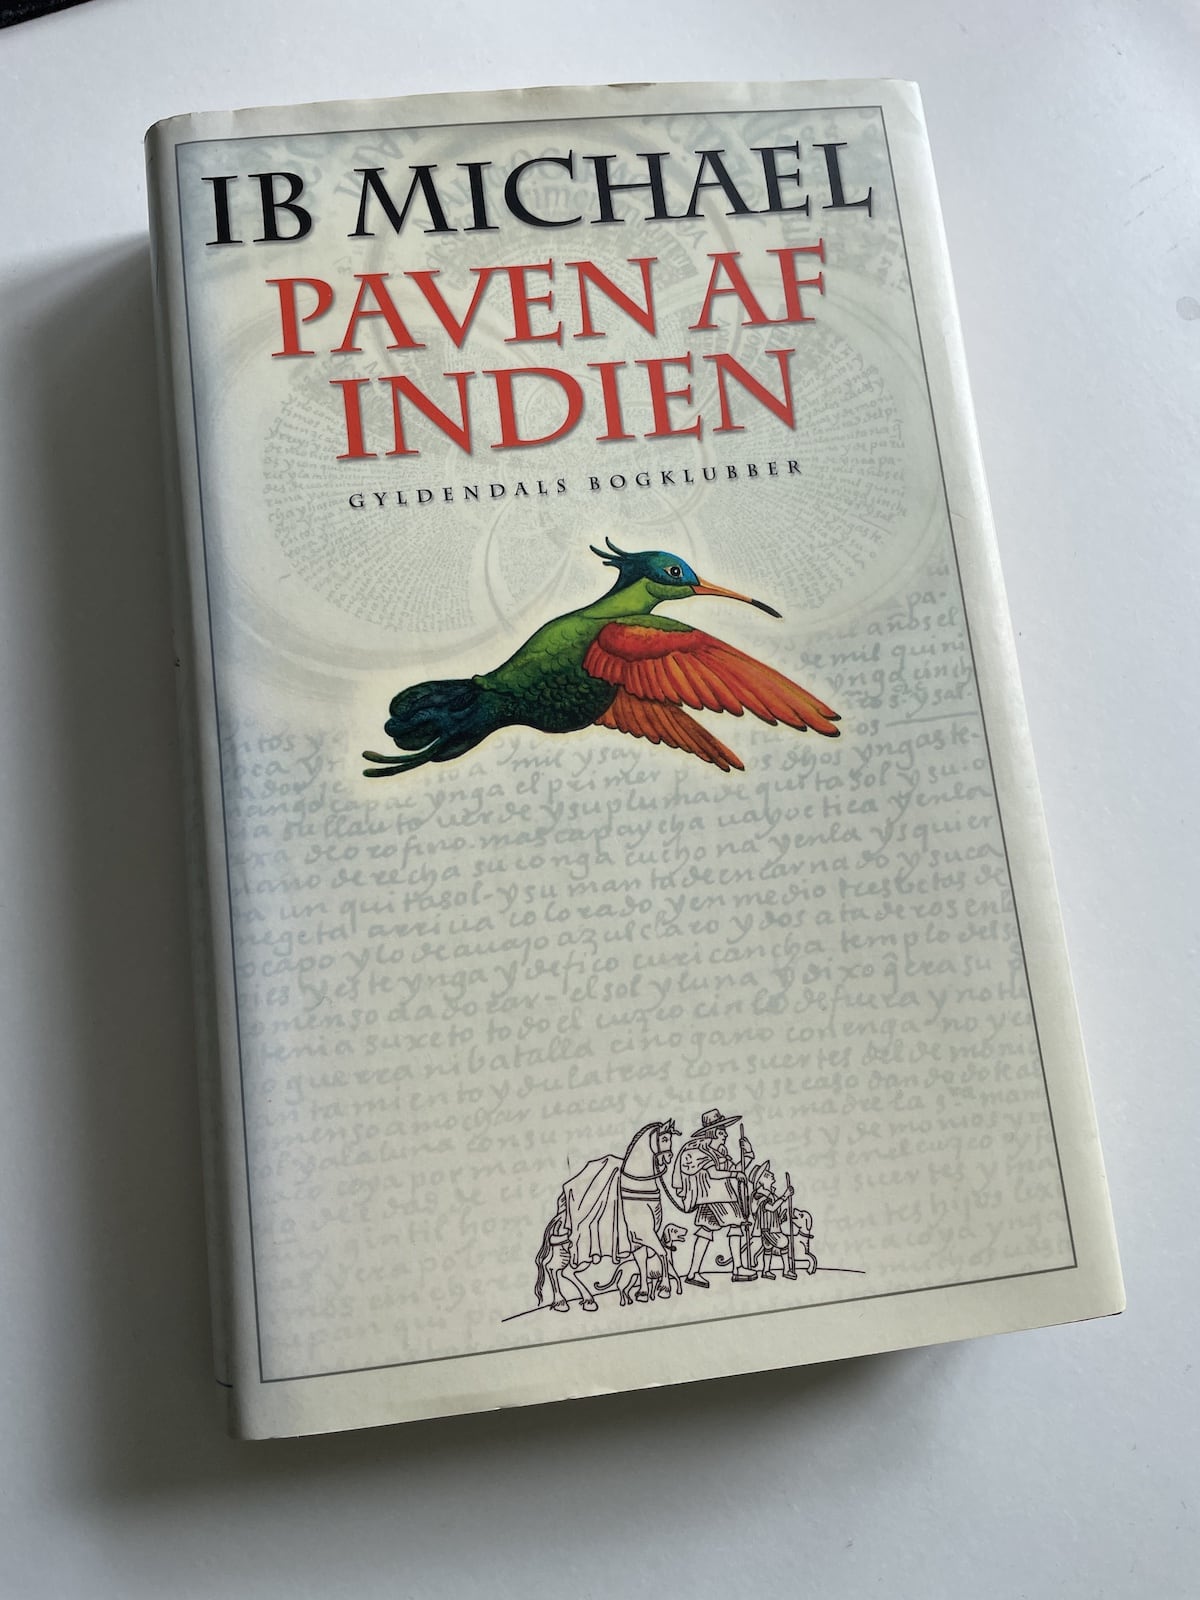 Paven af Indien, Ib Michael, brugt bog